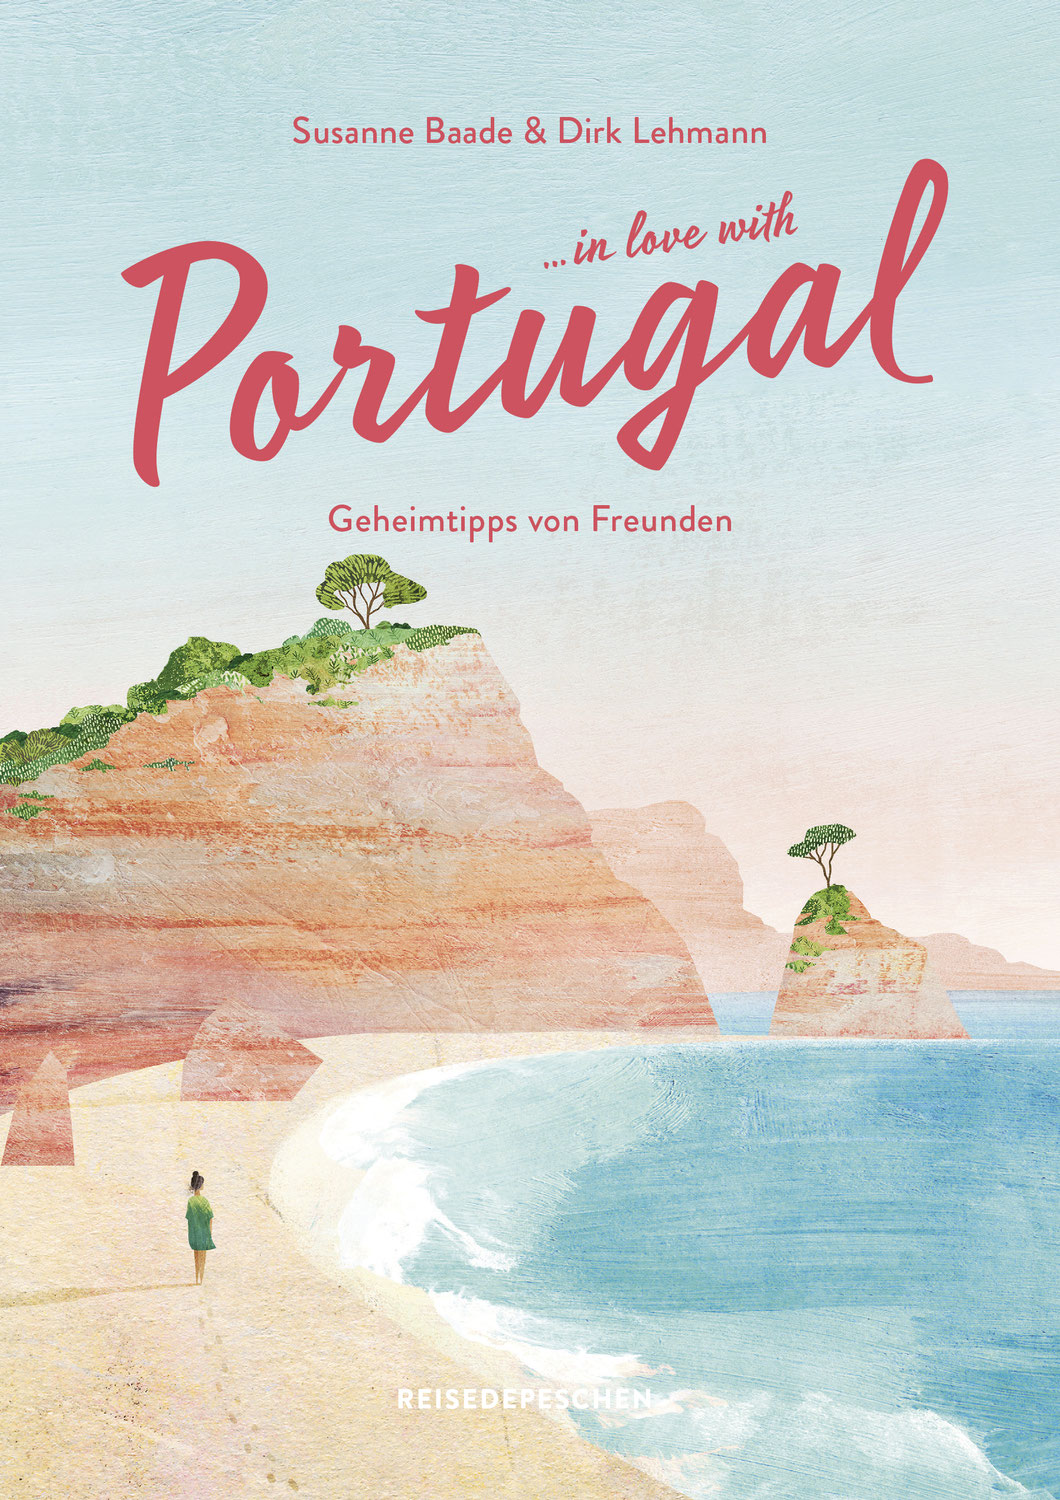 In Love with Portugal von Susanne Baade & Dirk Lehmann ☆☆☆☆